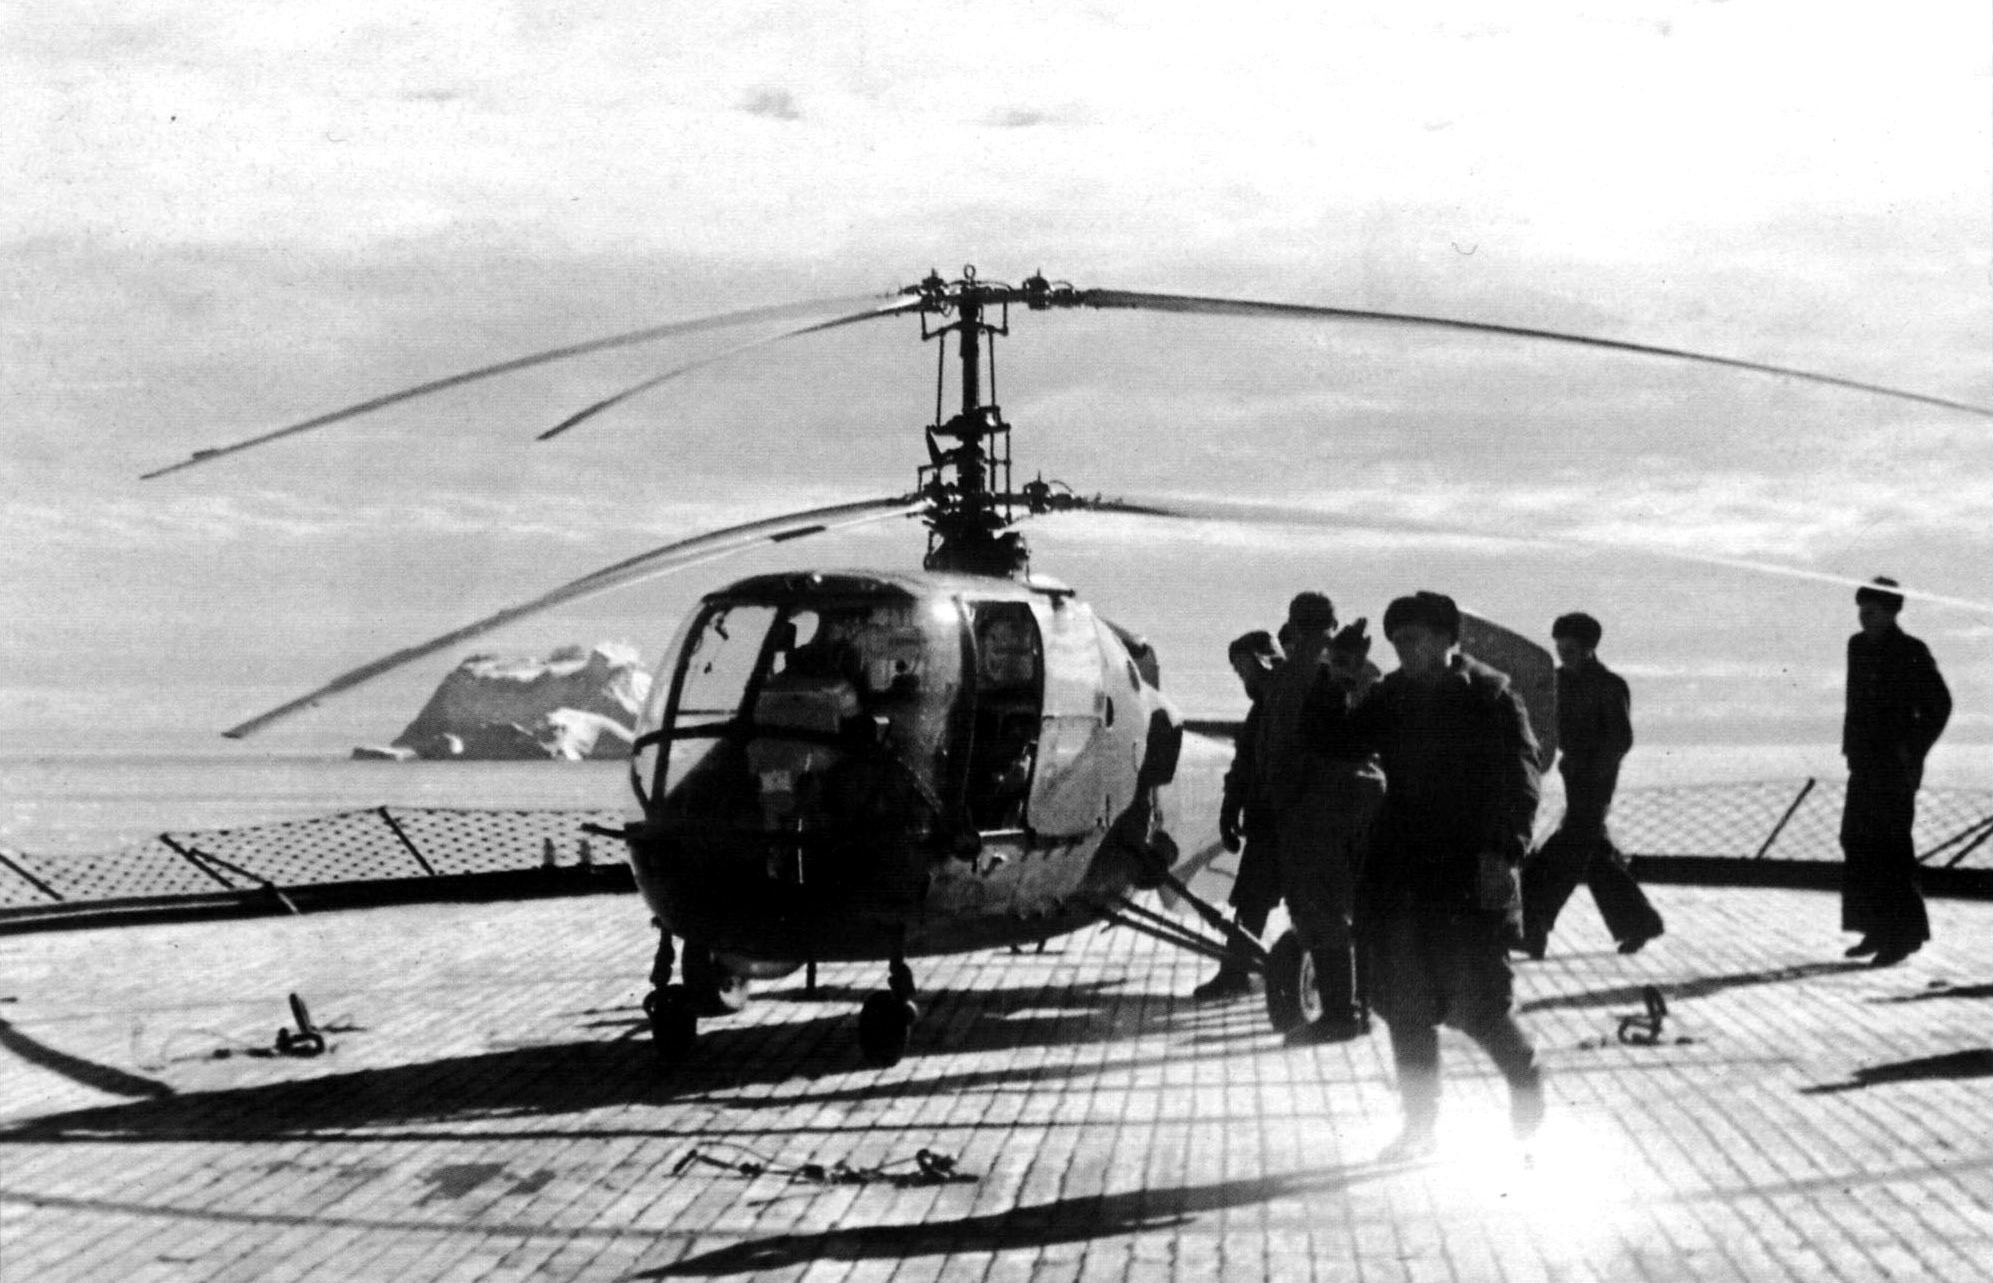 Камов б н. Вертолёты Камова ка 15. Первый вертолет Камова. Первые советские вертолеты Камова. Вертолет ка-15м.